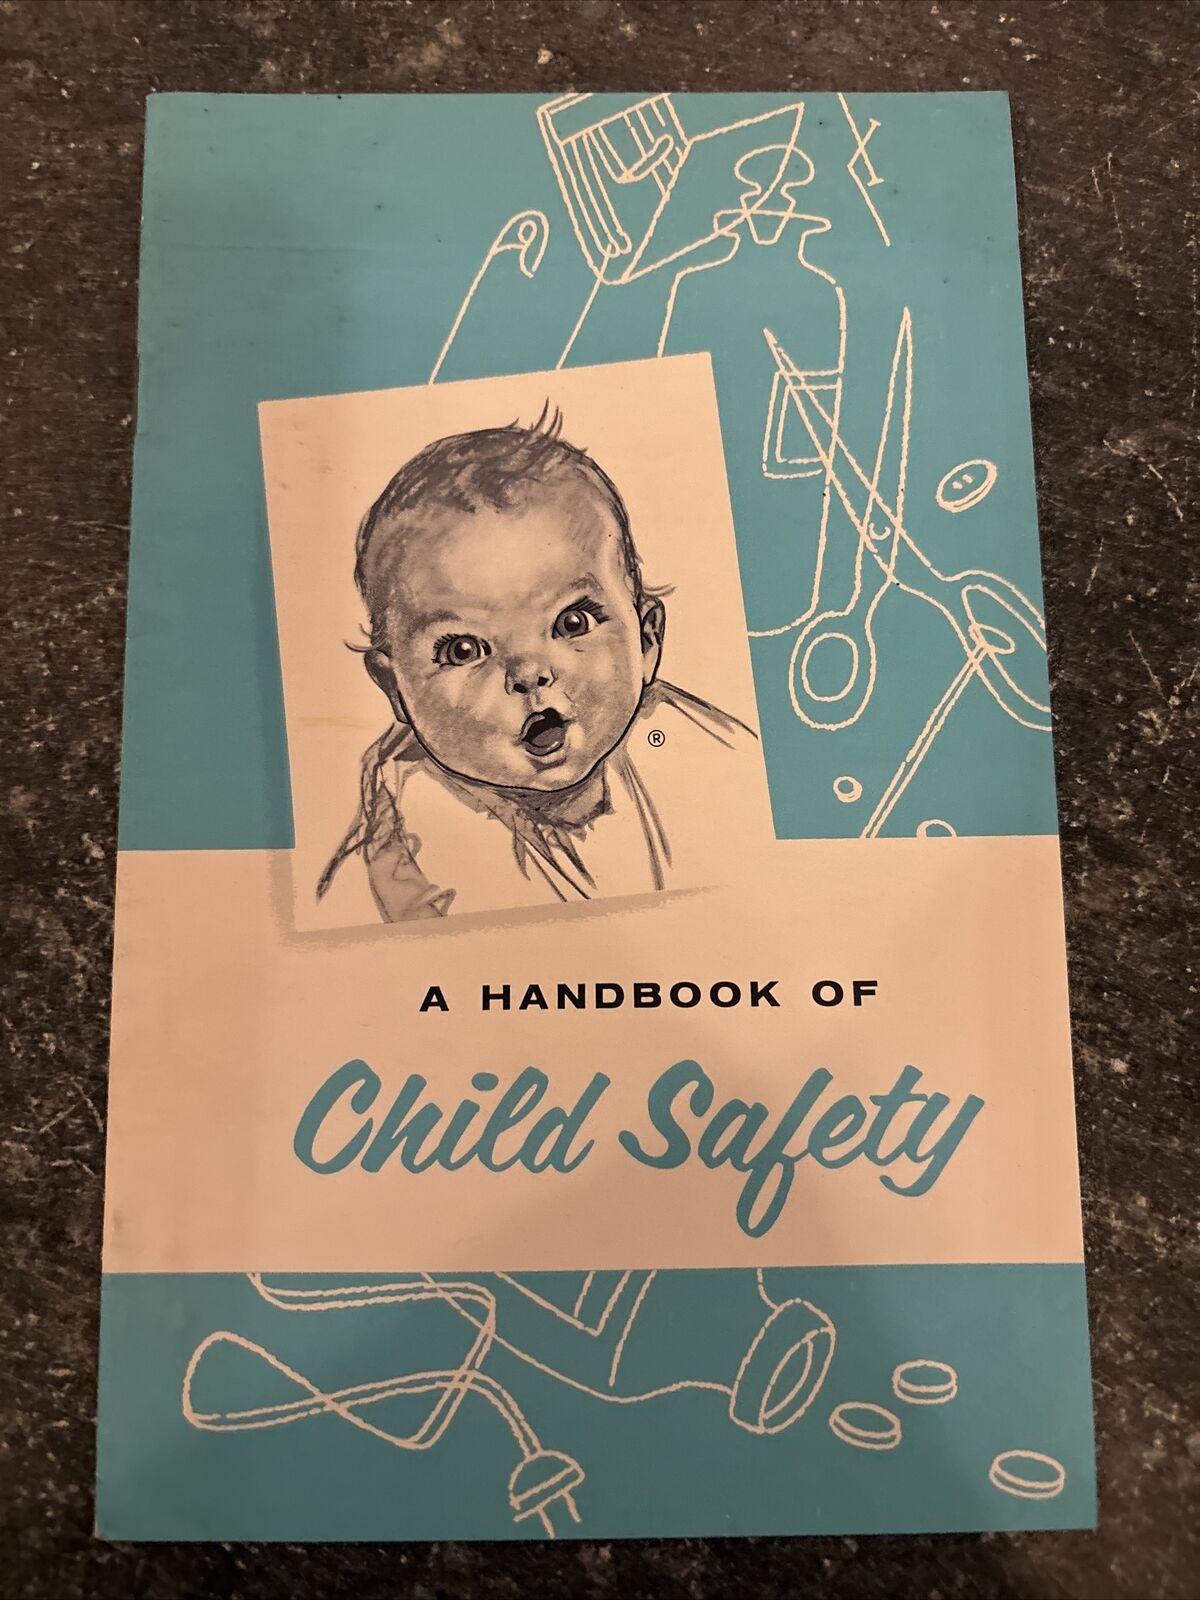 Lot of Vintage 1967 GERBER BABY Booklet- Child Safety